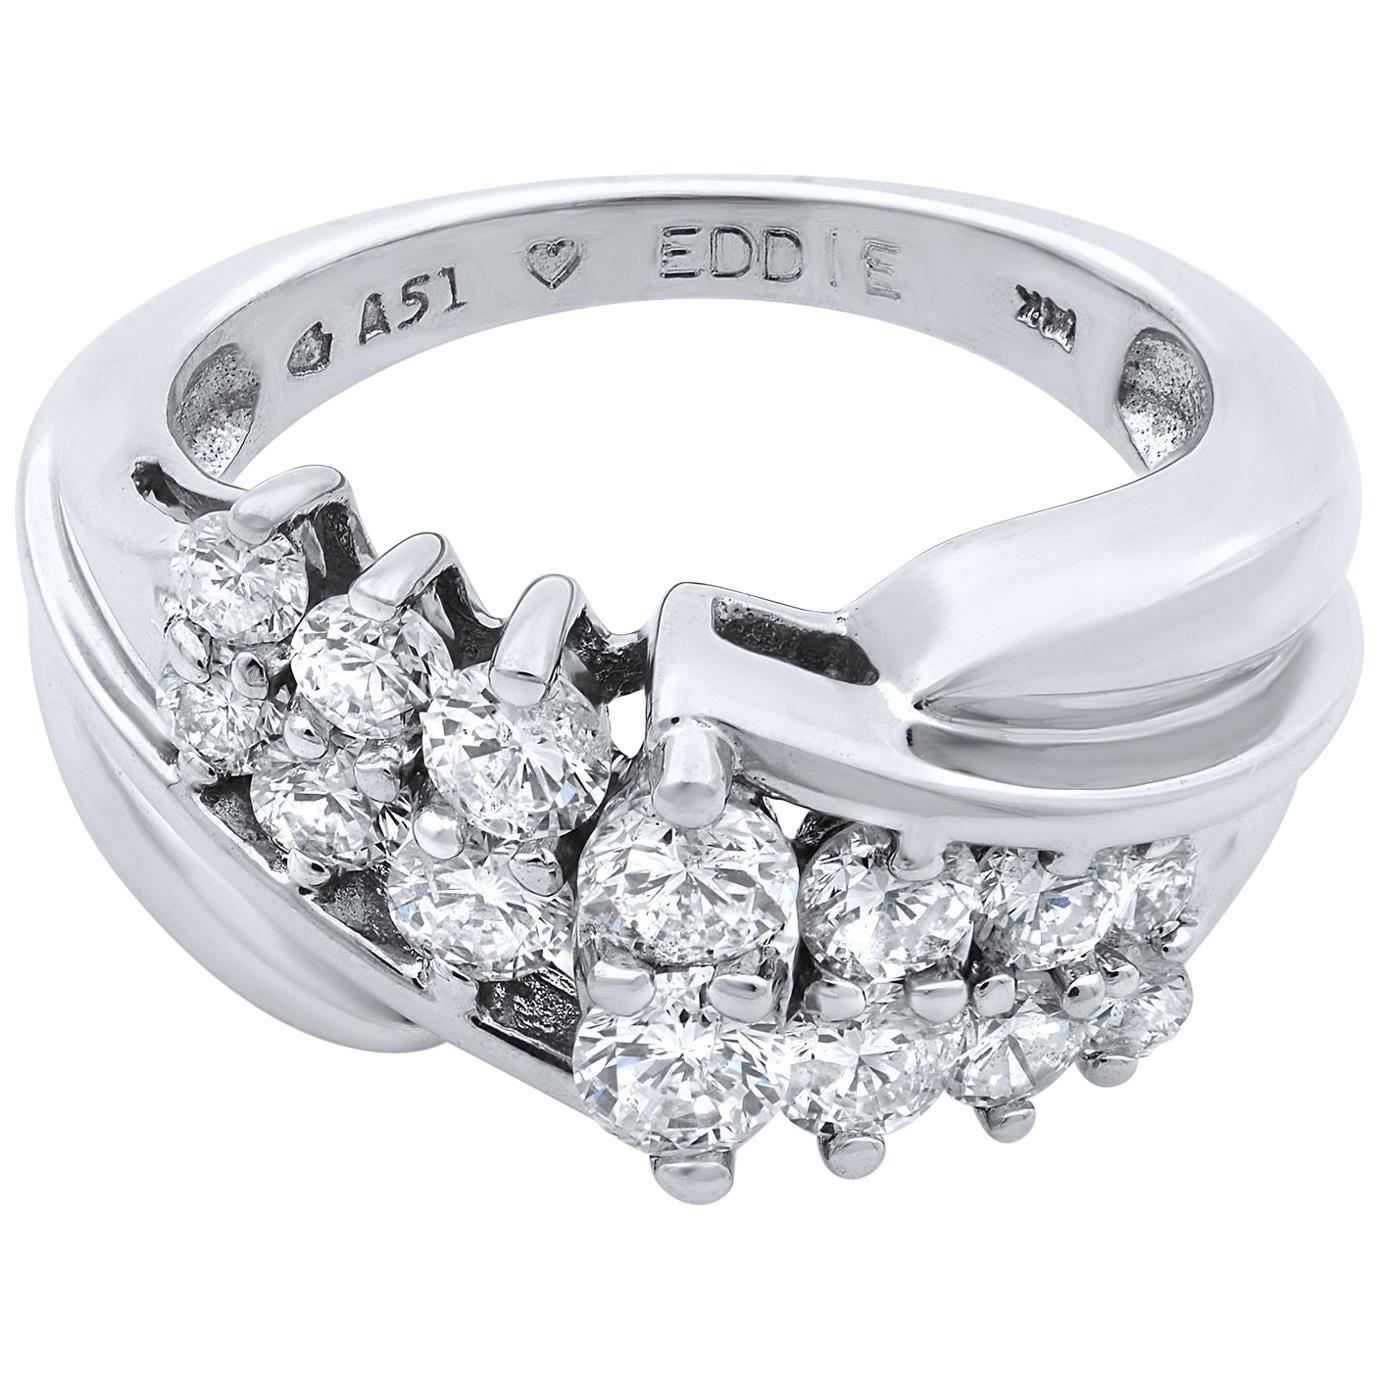 Rachel Koen 14 Karat White Gold Diamond Ring 1.00 Carat